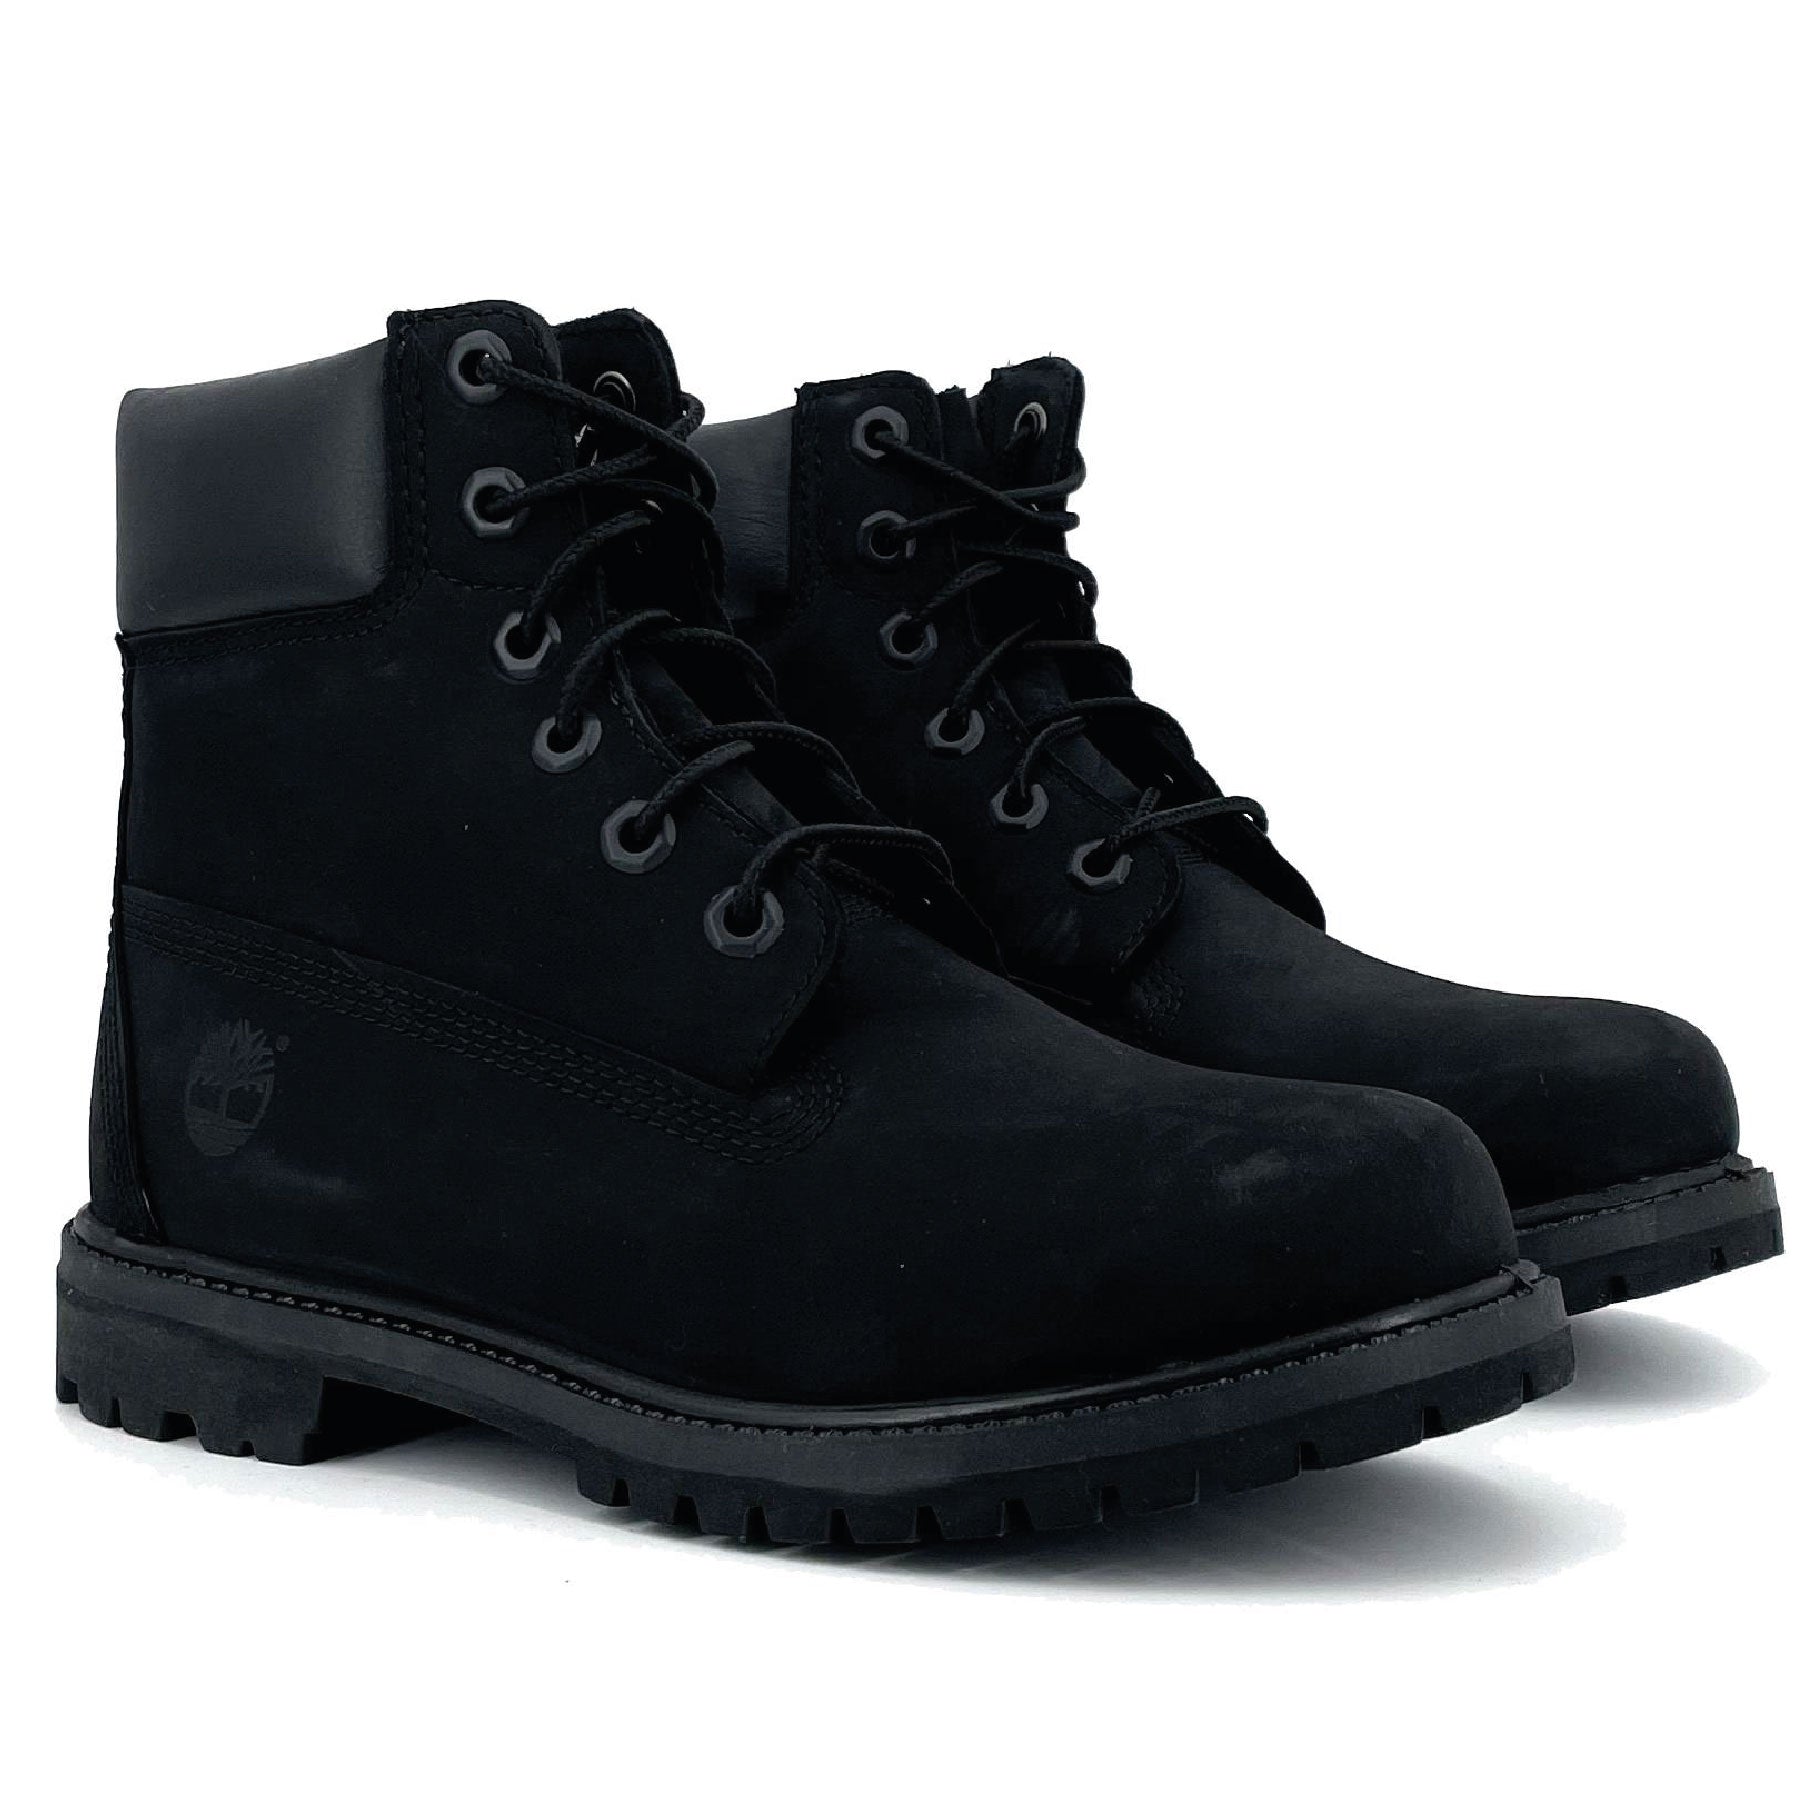 6" Premium Boot Black W